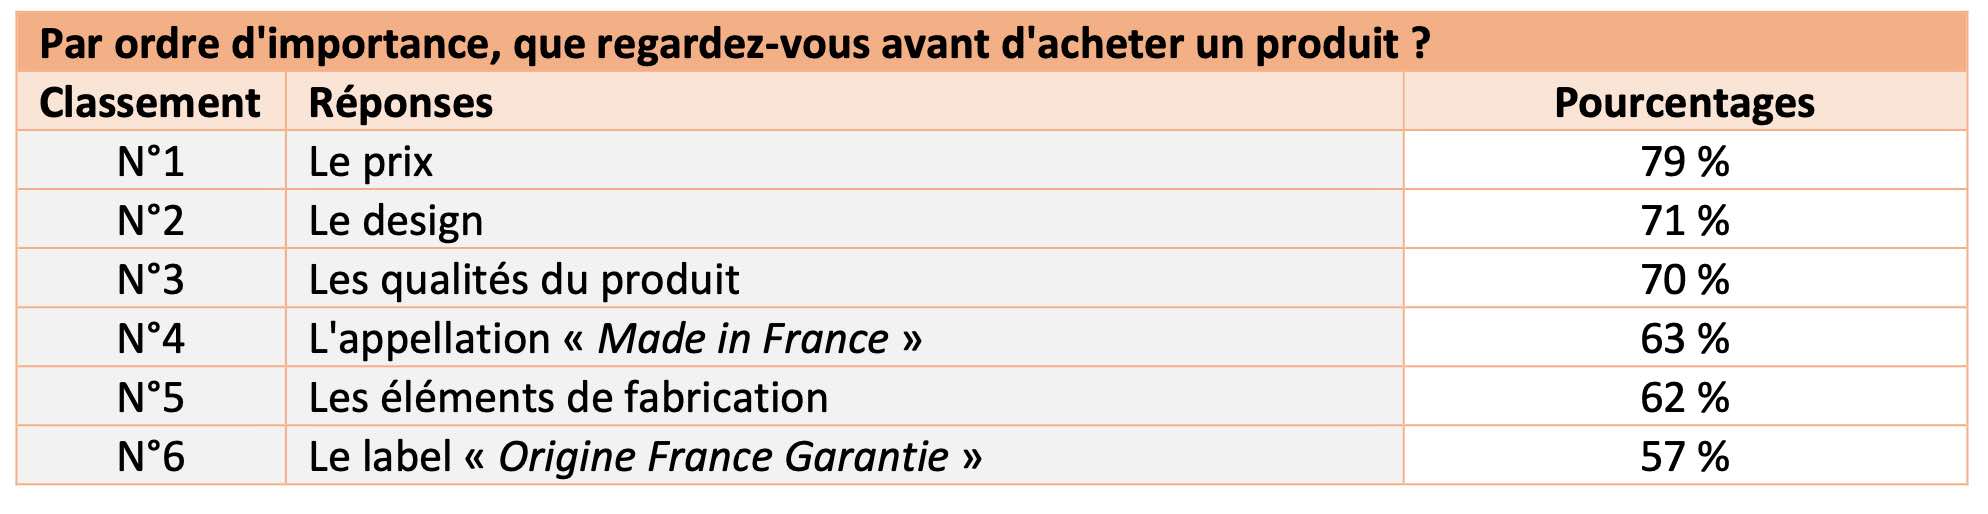 Sondage sur les critères de choix des Français en matière de produits du bâtiment - Source : Rothelec